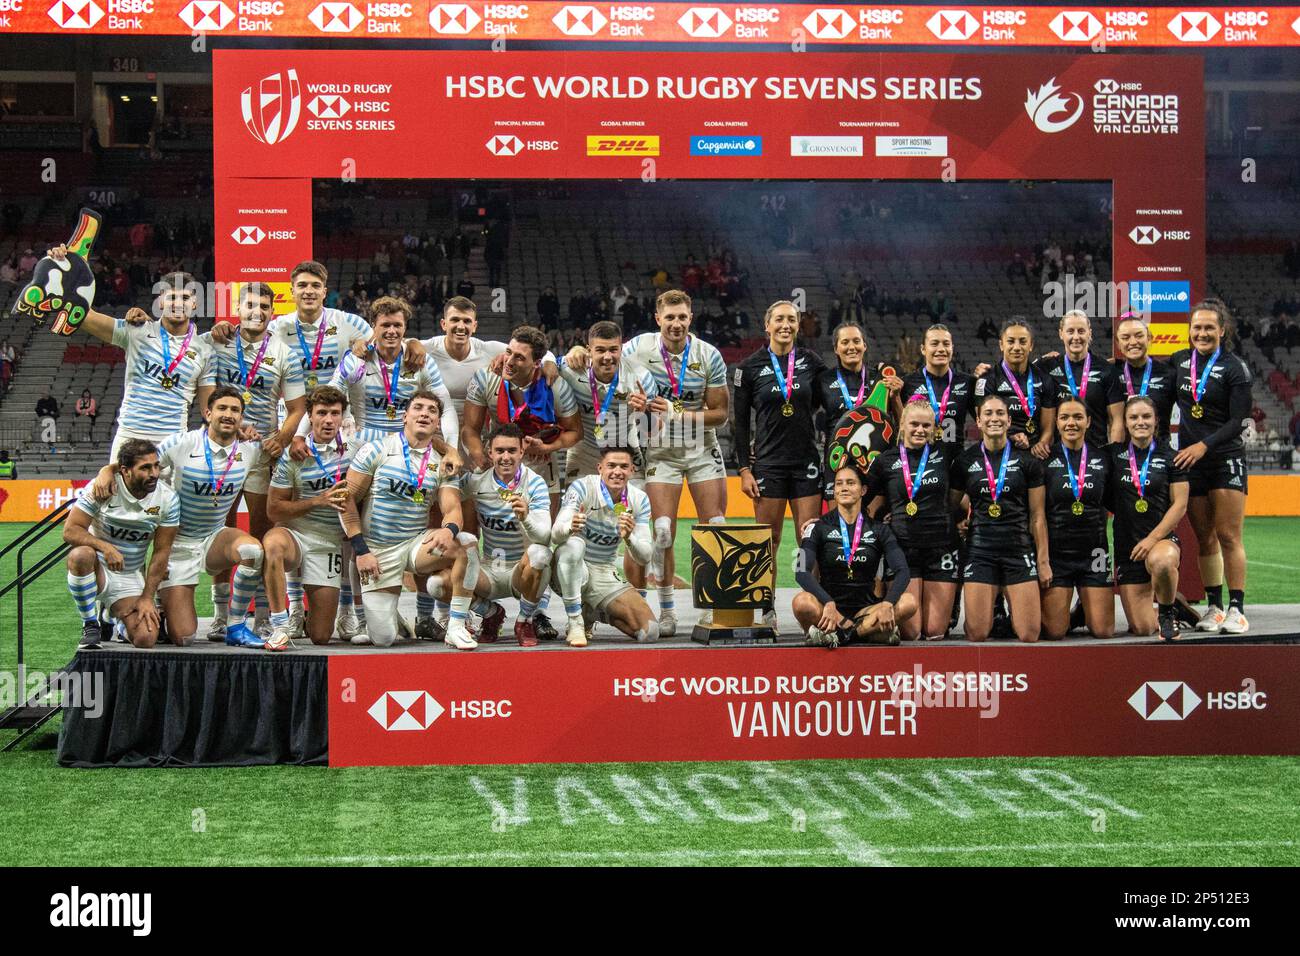 VANCOUVER, CANADA - 05 MARZO: Gli uomini argentini e le donne neozelandesi festeggiano dopo aver vinto la medaglia d'oro durante la HSBC World Rugby Sevens Series 2023 al BC Place Stadium di Vancouver, Canada. (Foto di Tomaz Jr/PxImages) Foto Stock